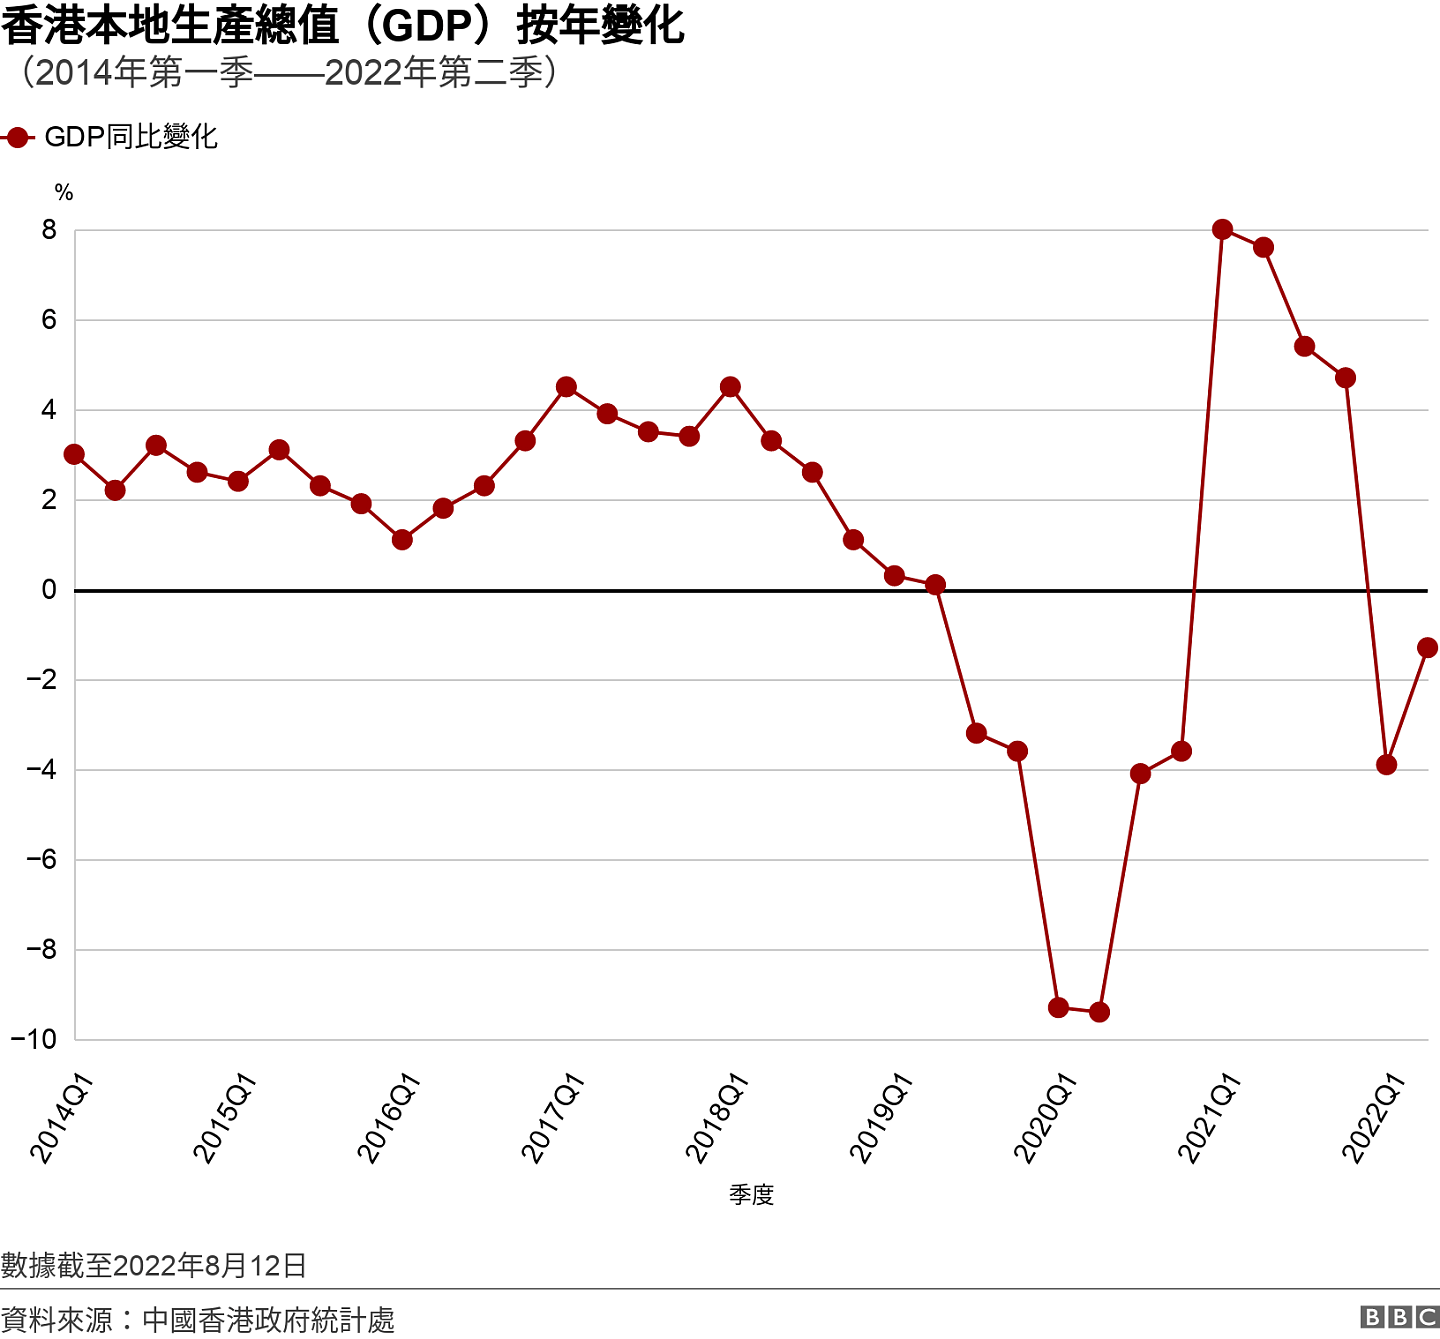 香港本地生產總值（GDP）按年變化. （2014年第一季——2022年第二季）. 從2014年第一季度至2022年第二季度香港GDP數字與去年同期比較增幅之趨勢圖 數據截至2022年8月12日.